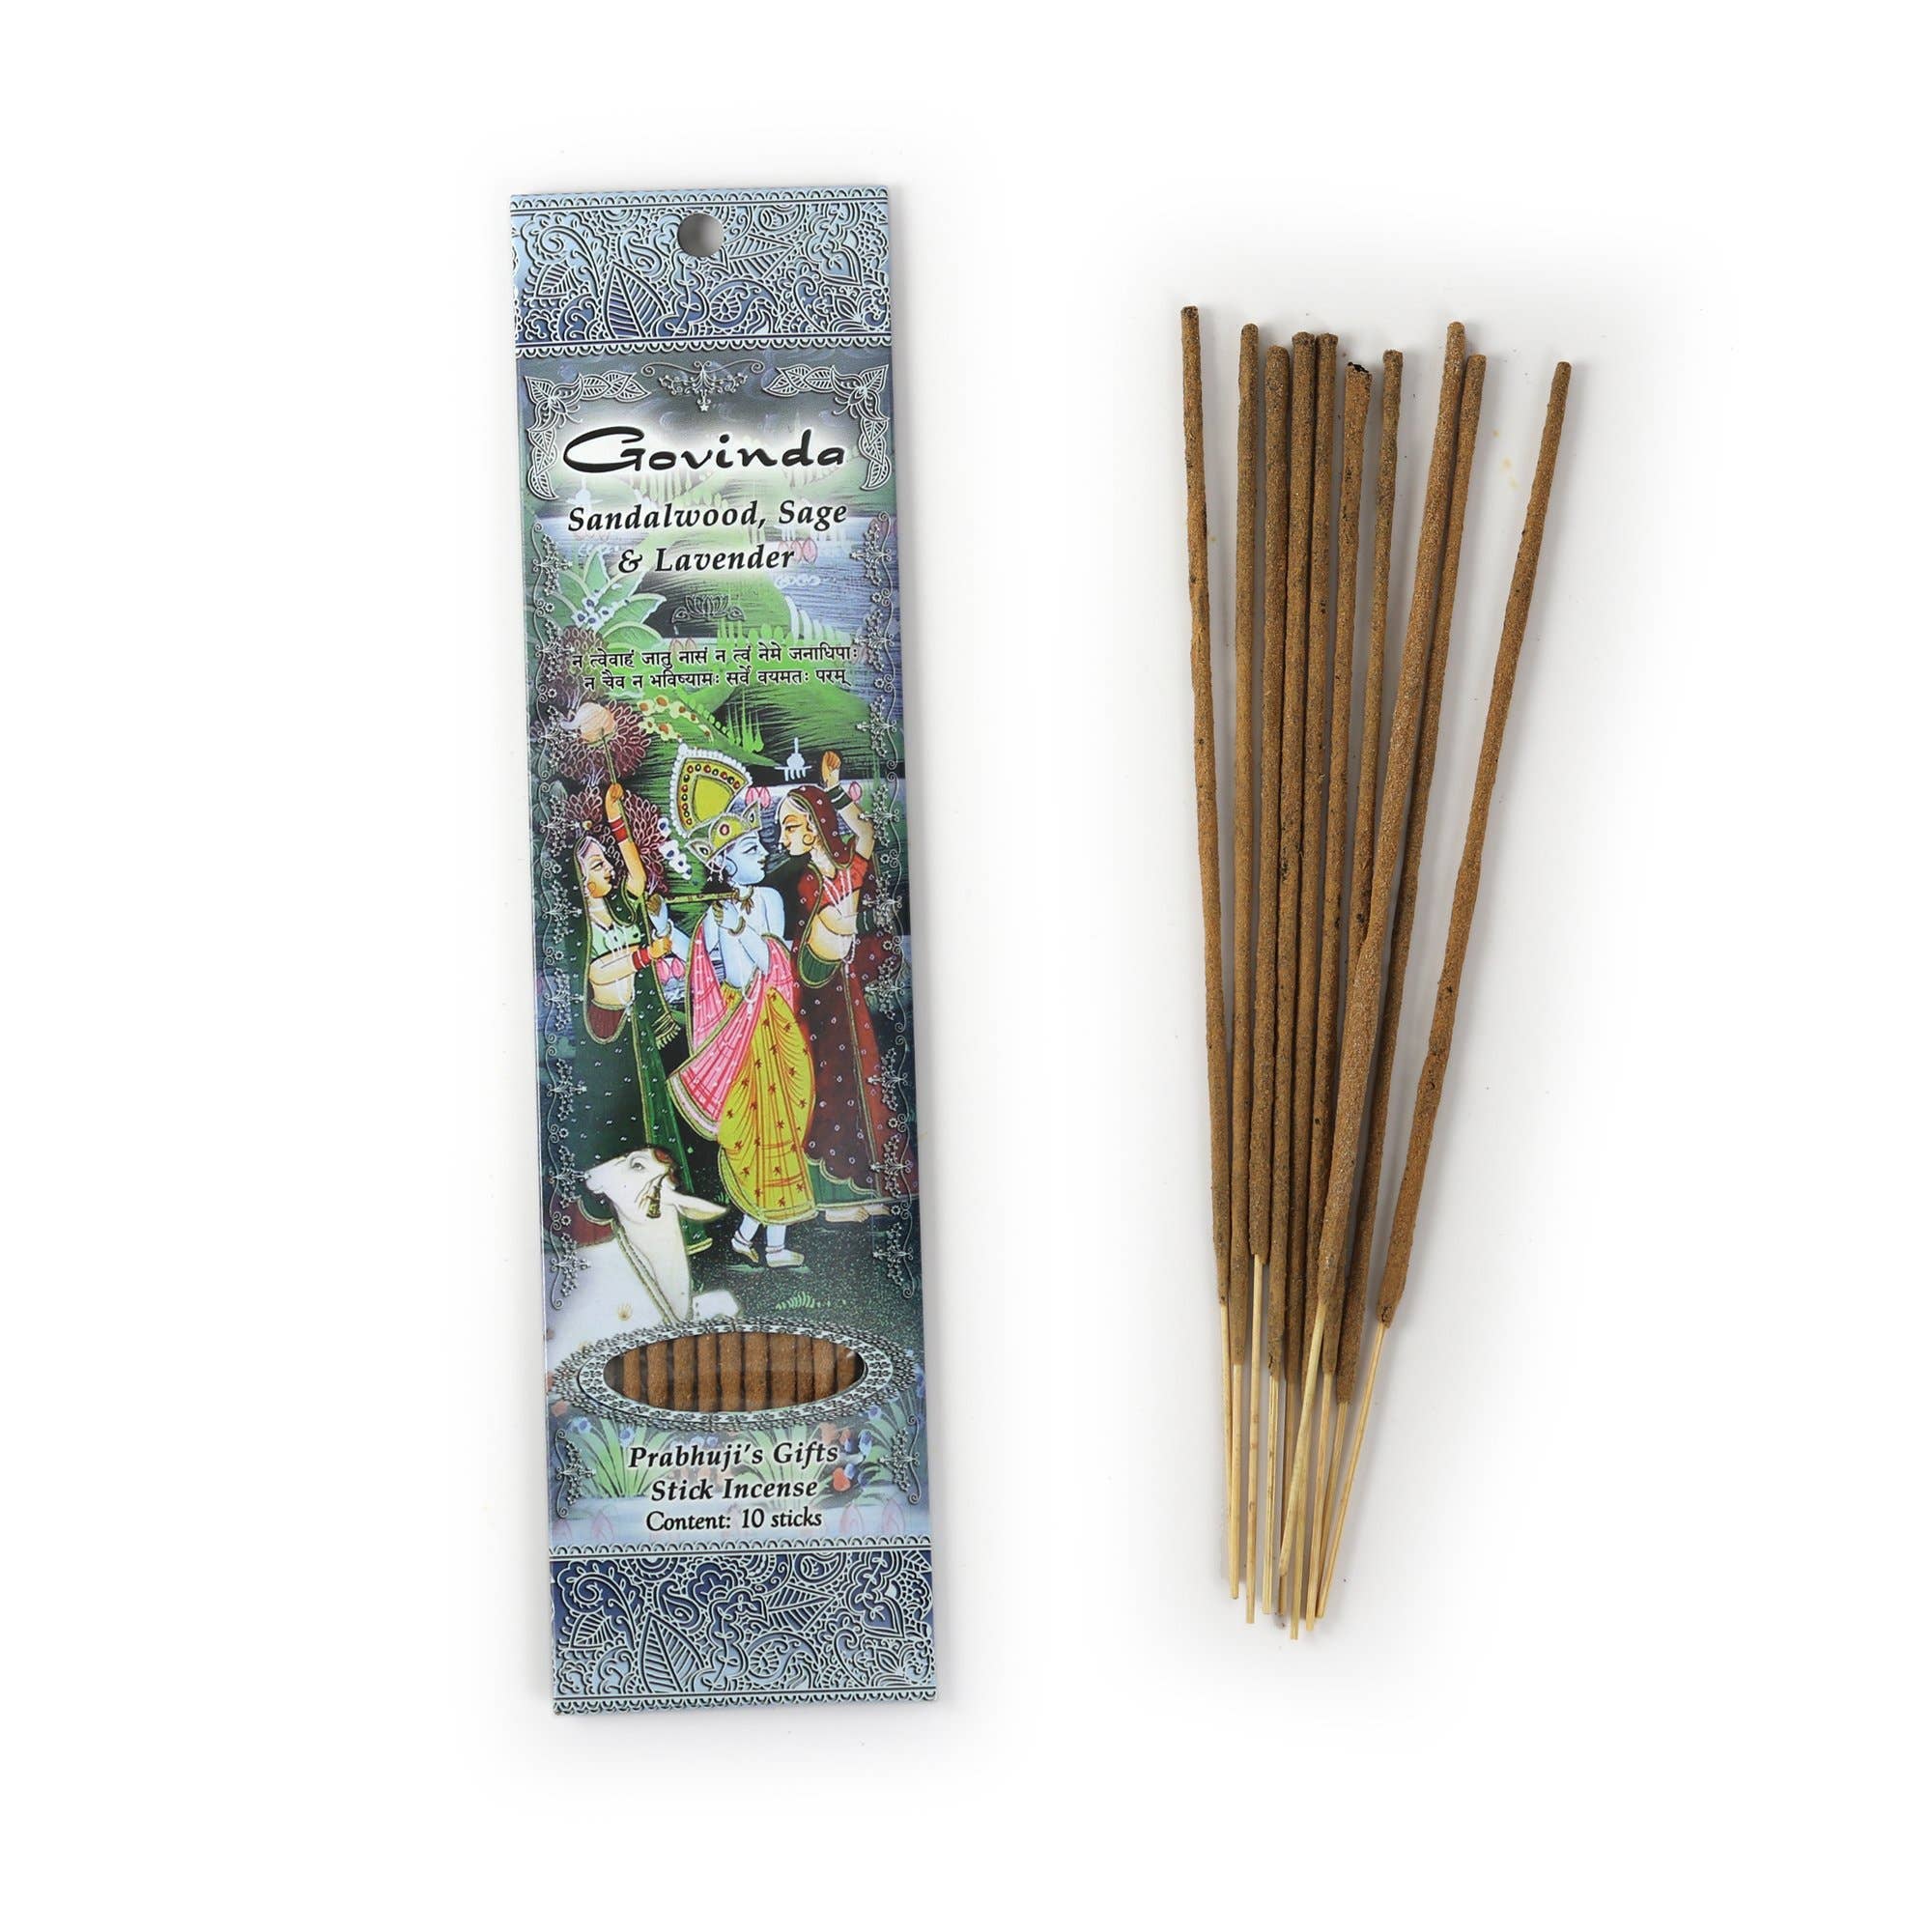 Incense Sticks Govinda - Sandalwood, Sage, and Lavender